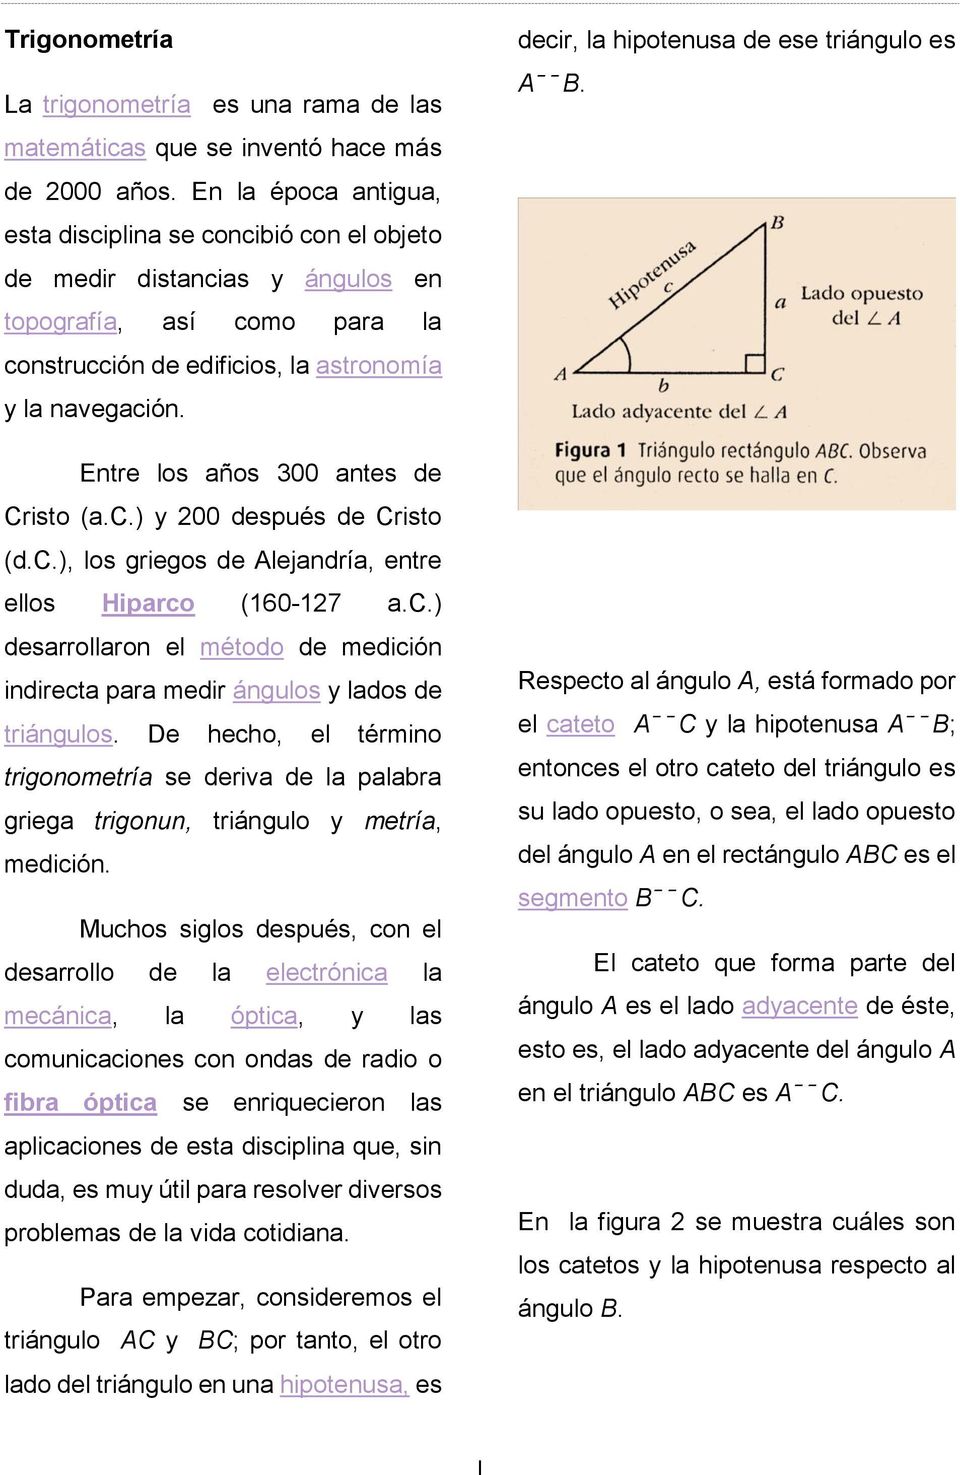 Entre los años 300 antes de Cristo (a.c.) y 200 después de Cristo (d.c.), los griegos de Alejandría, entre ellos Hiparco (160-127 a.c.) desarrollaron el método de medición indirecta para medir ángulos y lados de triángulos.